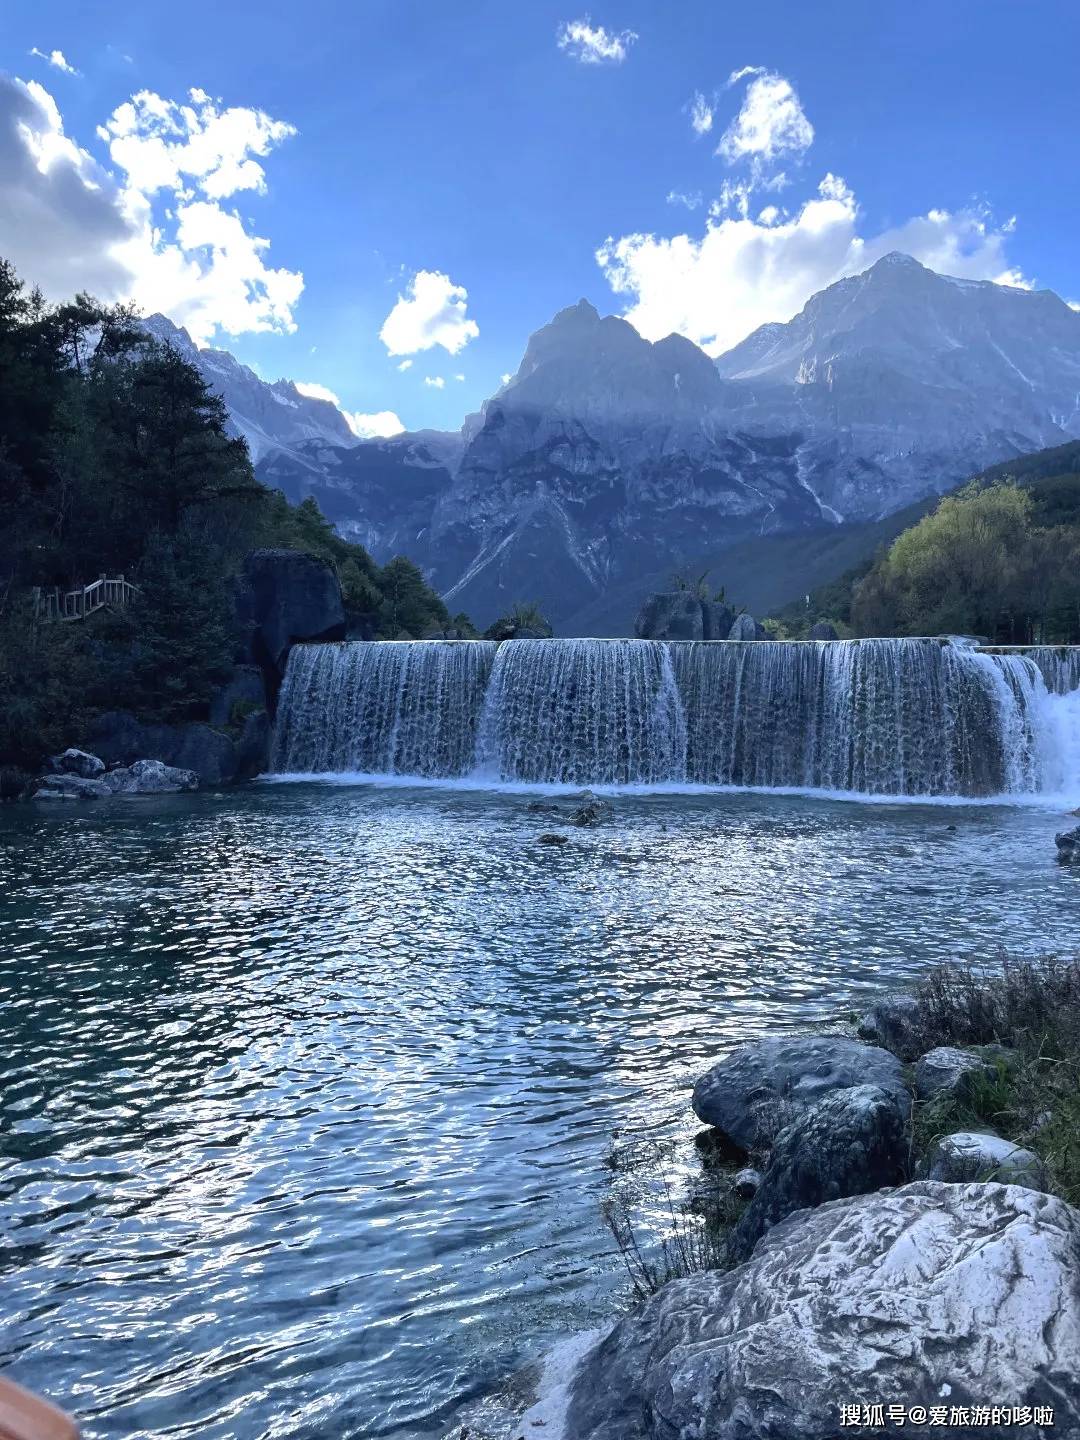 藏在丽江的小瑞士,美得人尽皆知,但99%游客却错过了它真正的美!